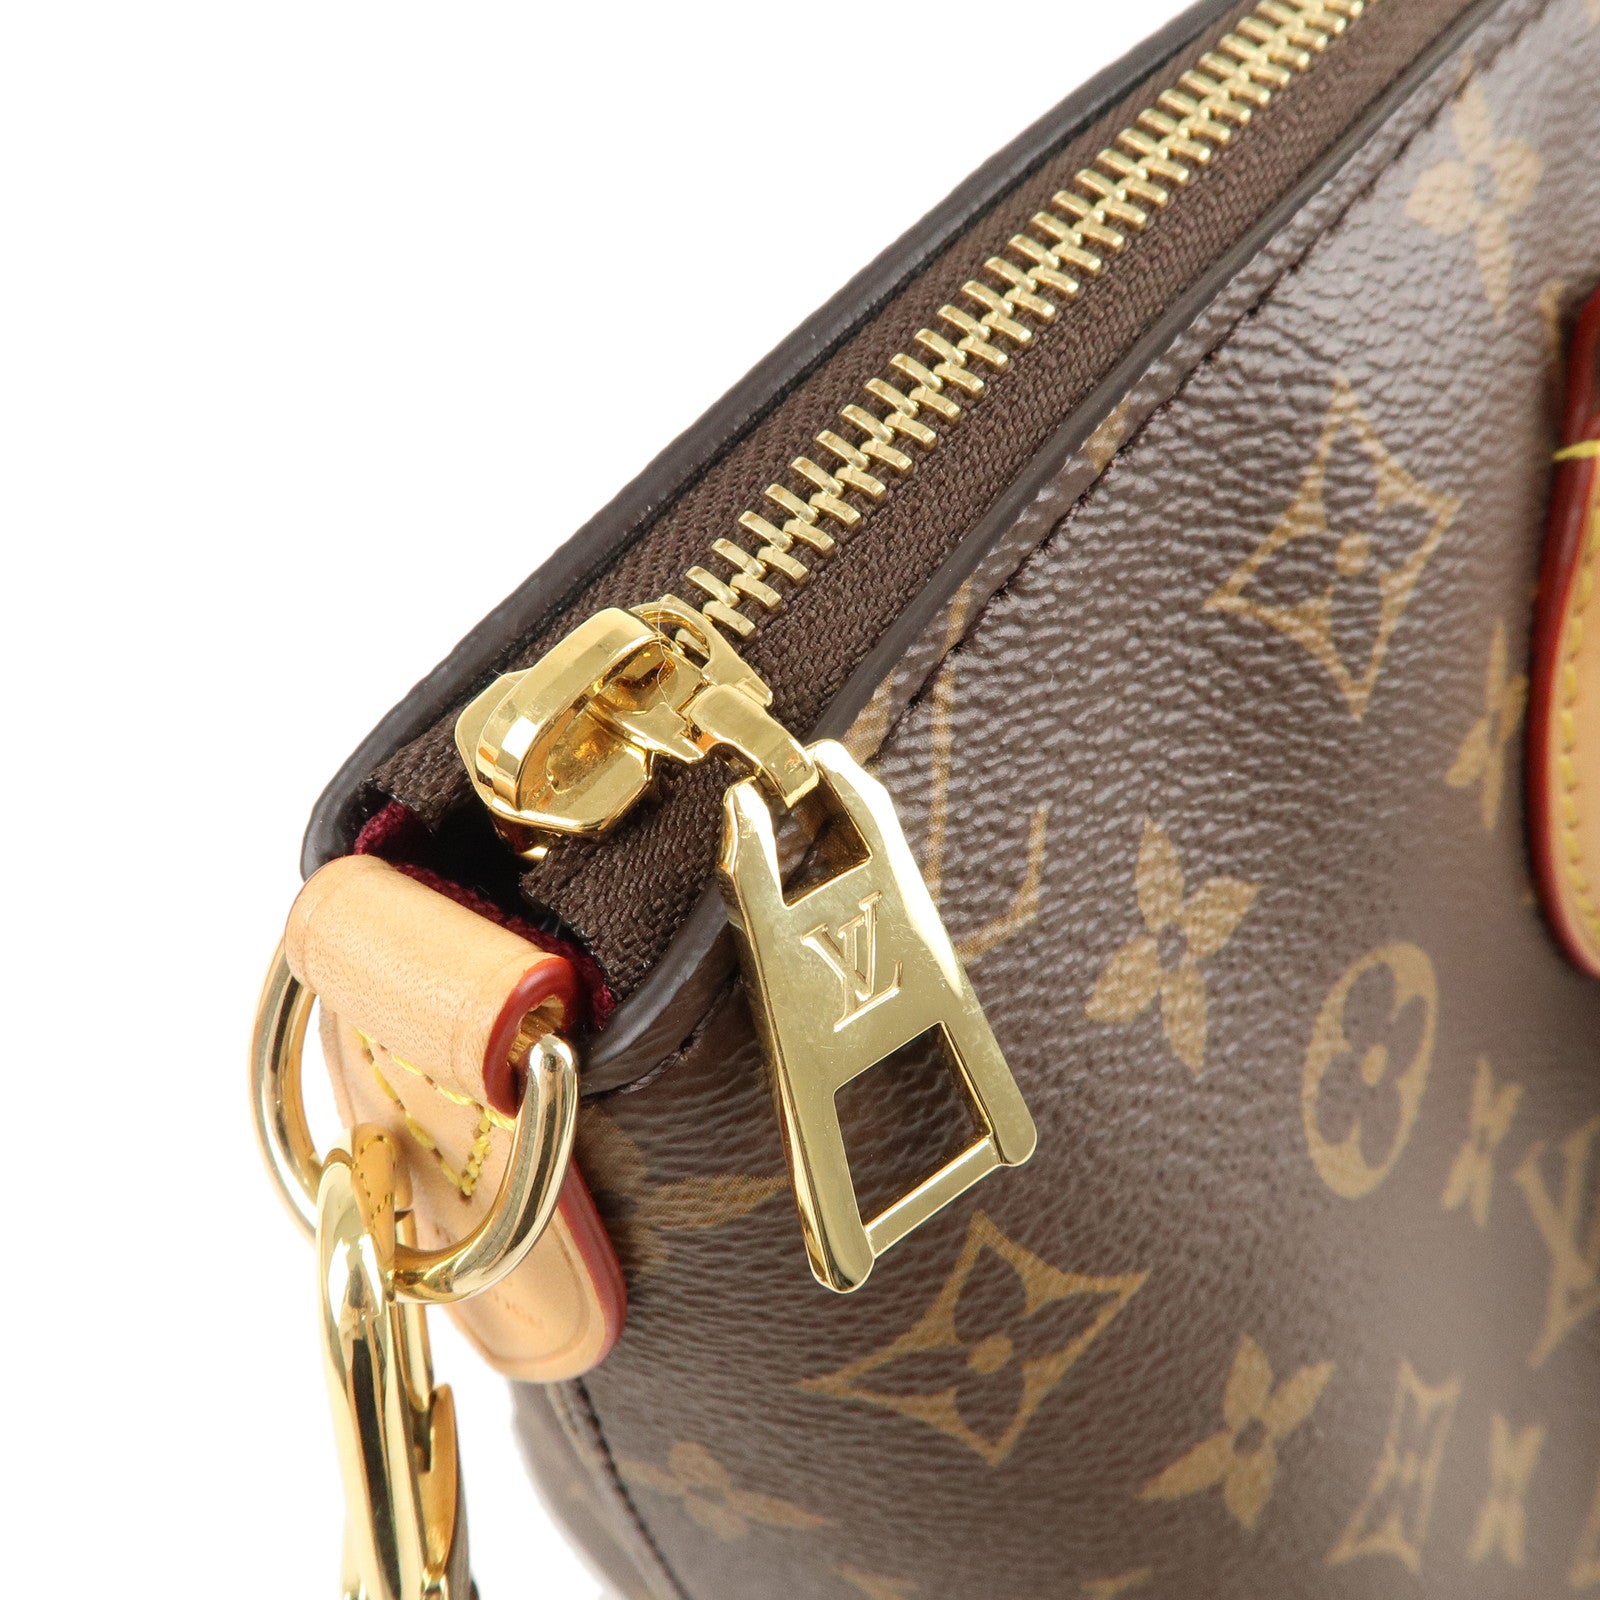 Louis Vuitton Boetie Bag - love the Lux